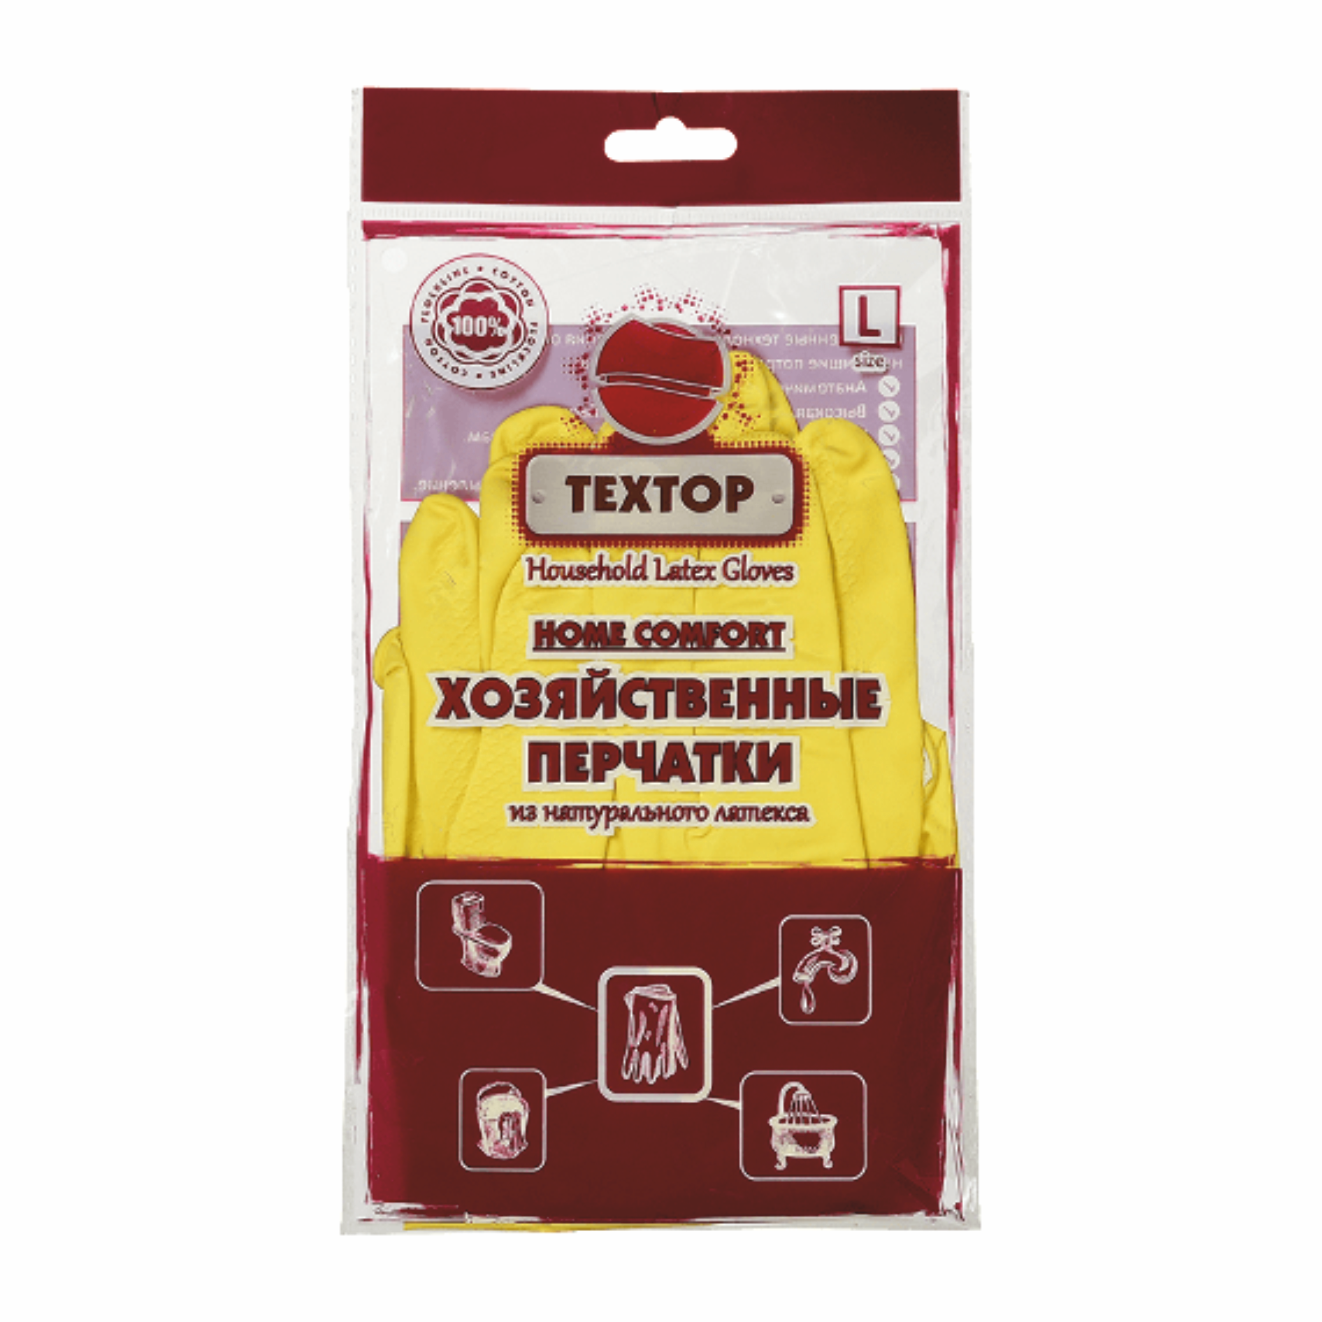 Перчатки хозяйственные латексные TEXTOP Home Comfort с х/б напылением